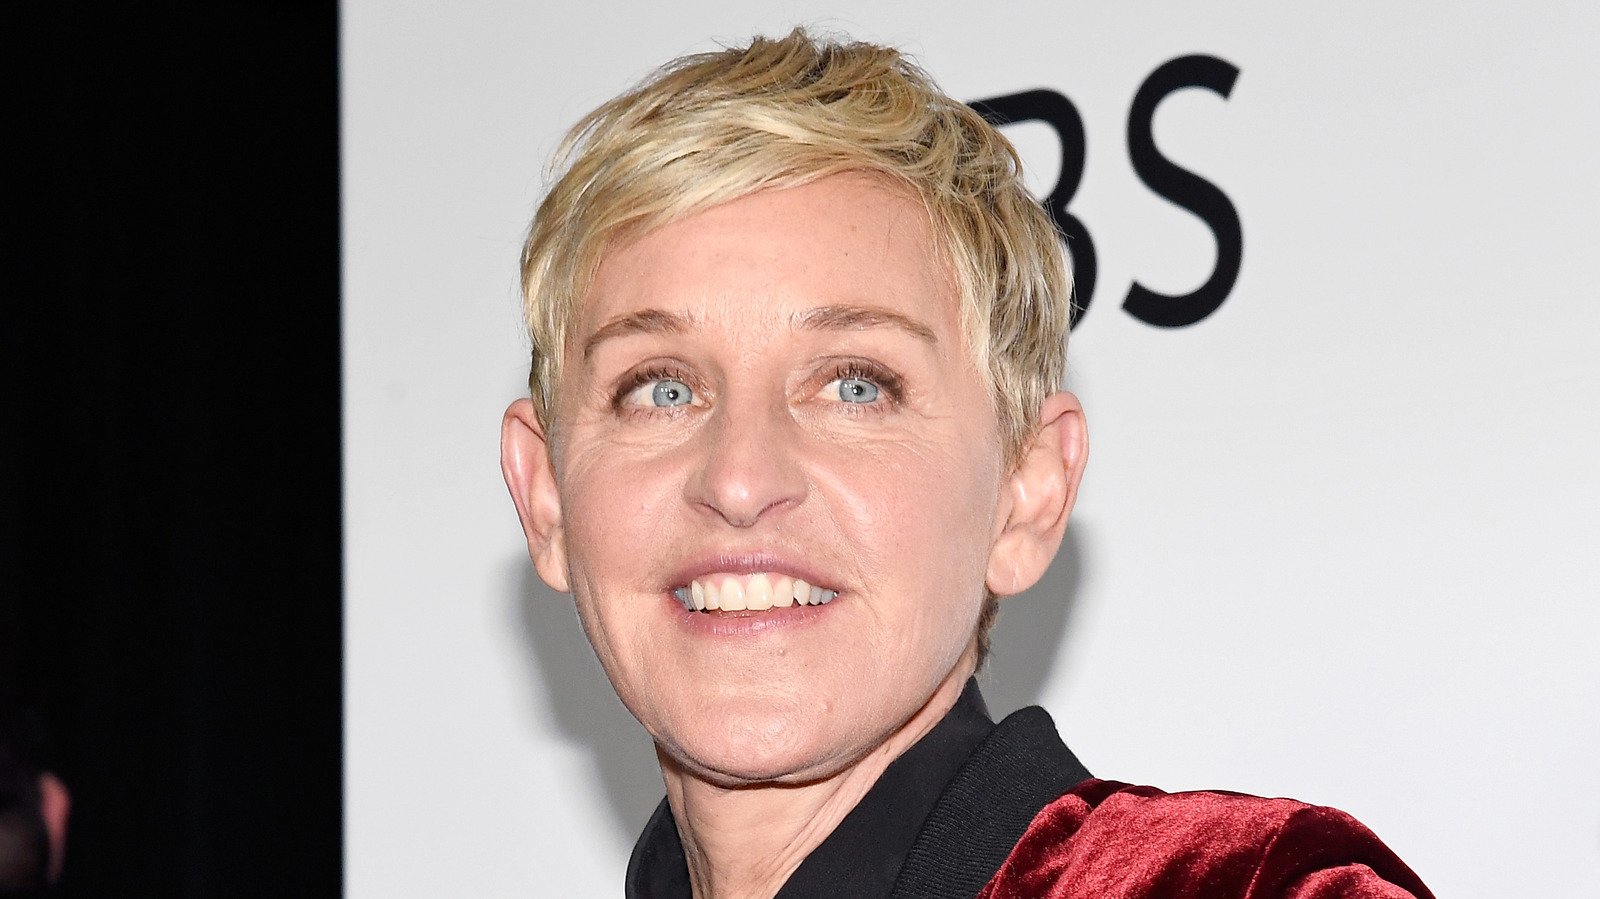 Scandalous details about Ellen DeGeneres' personal life - cover